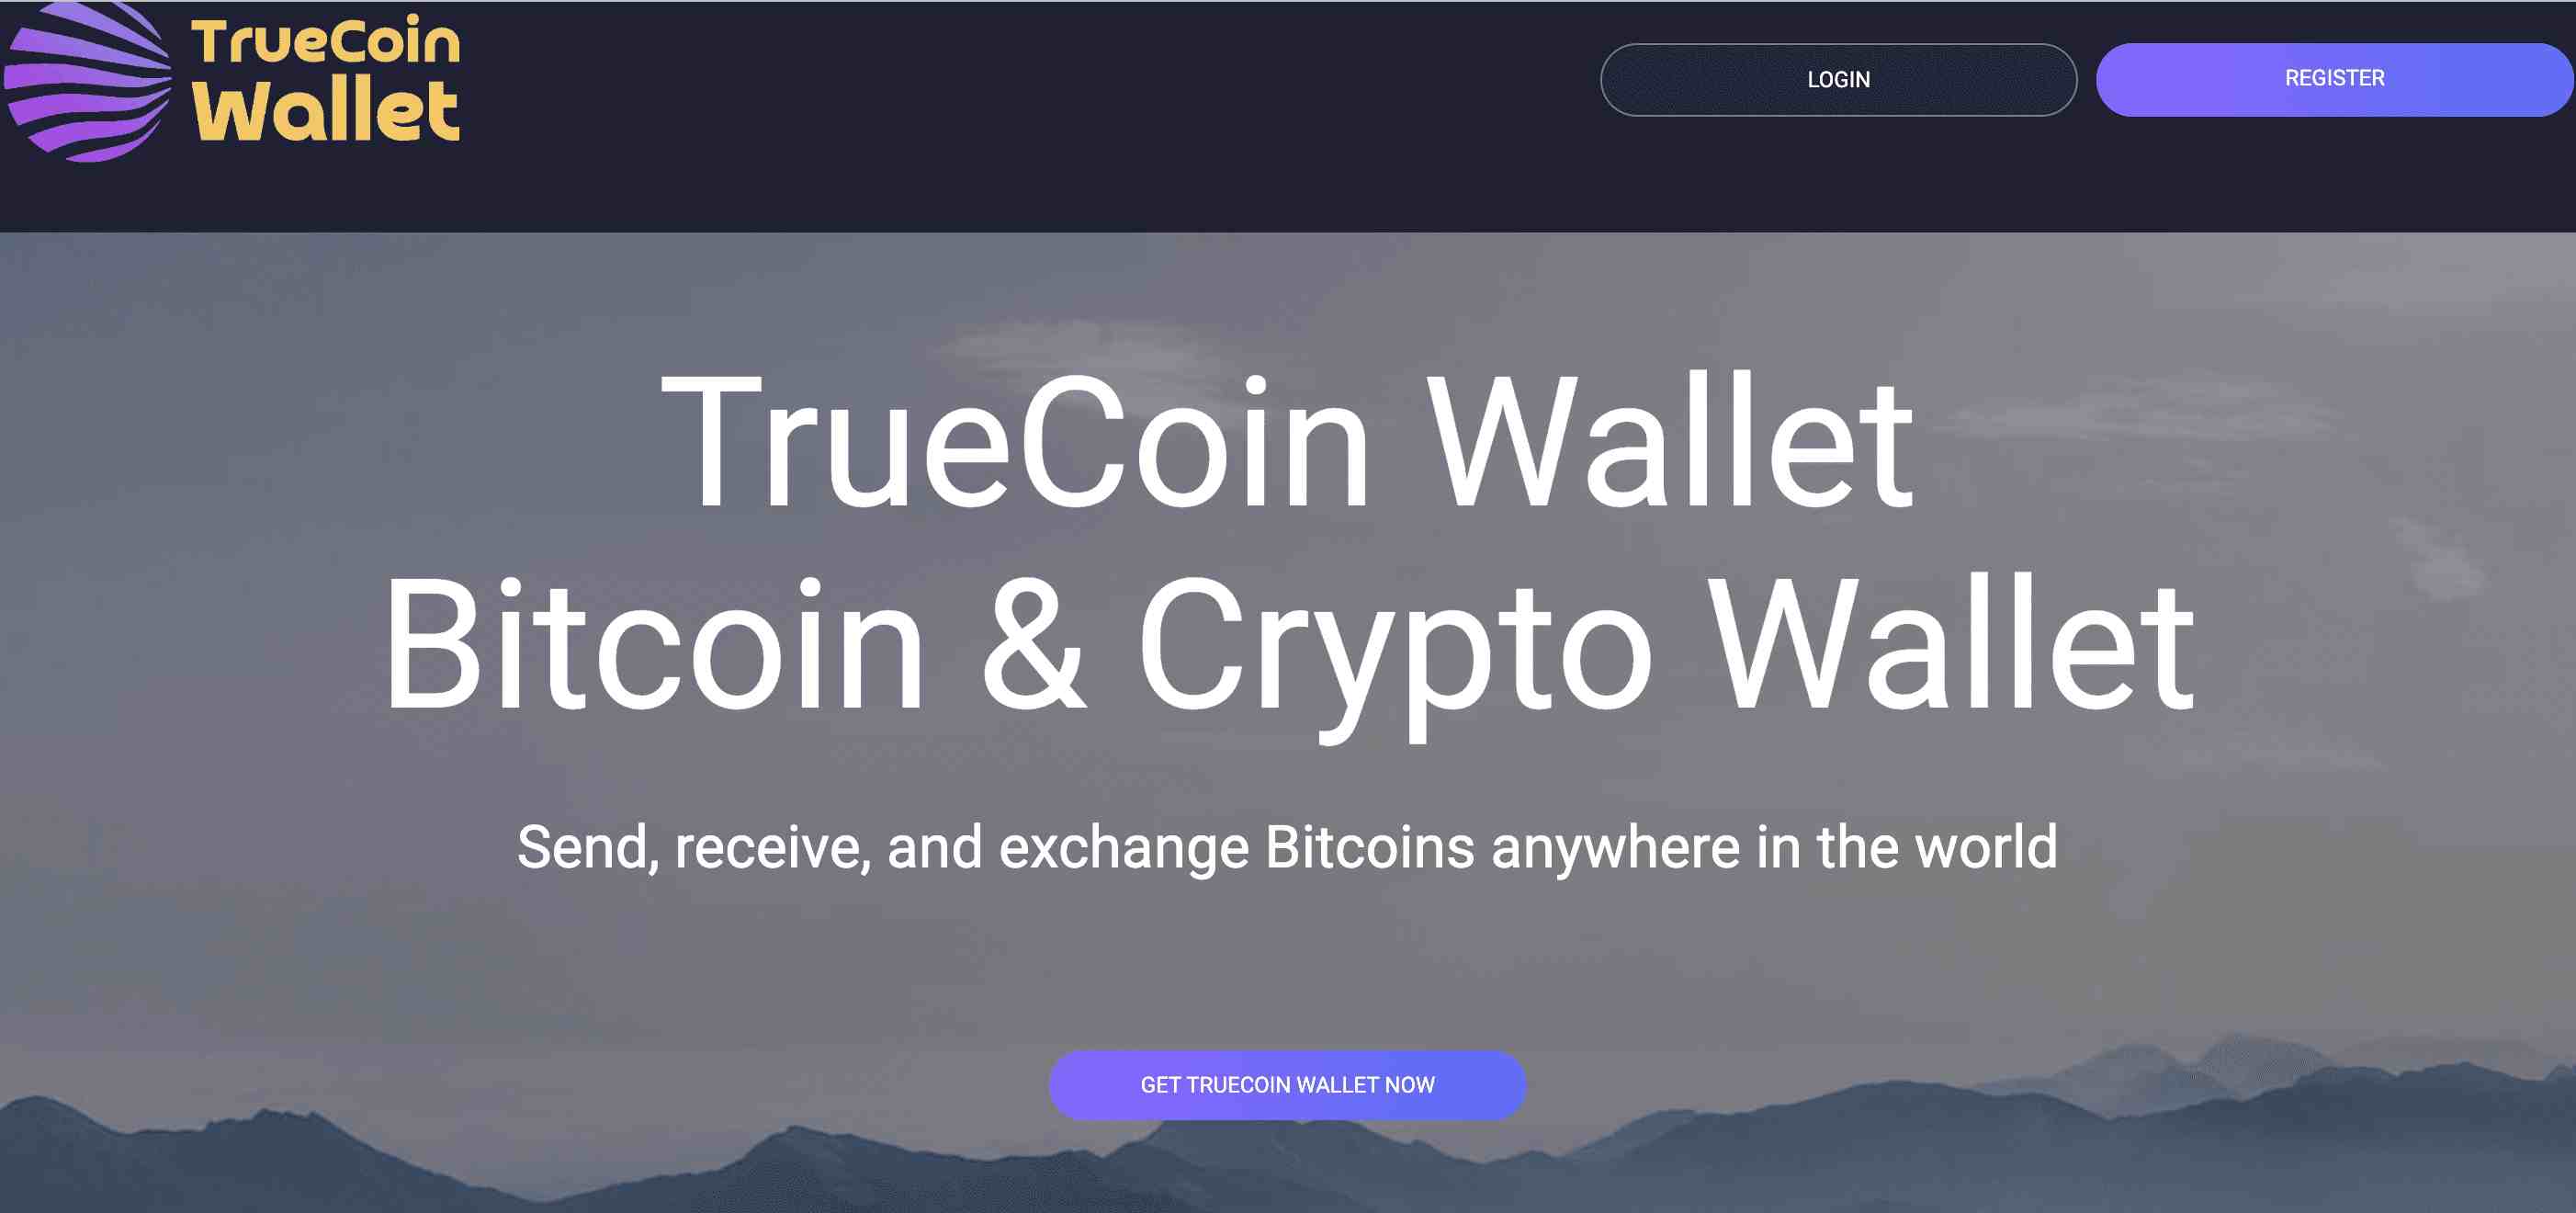 Truecoin Wallet